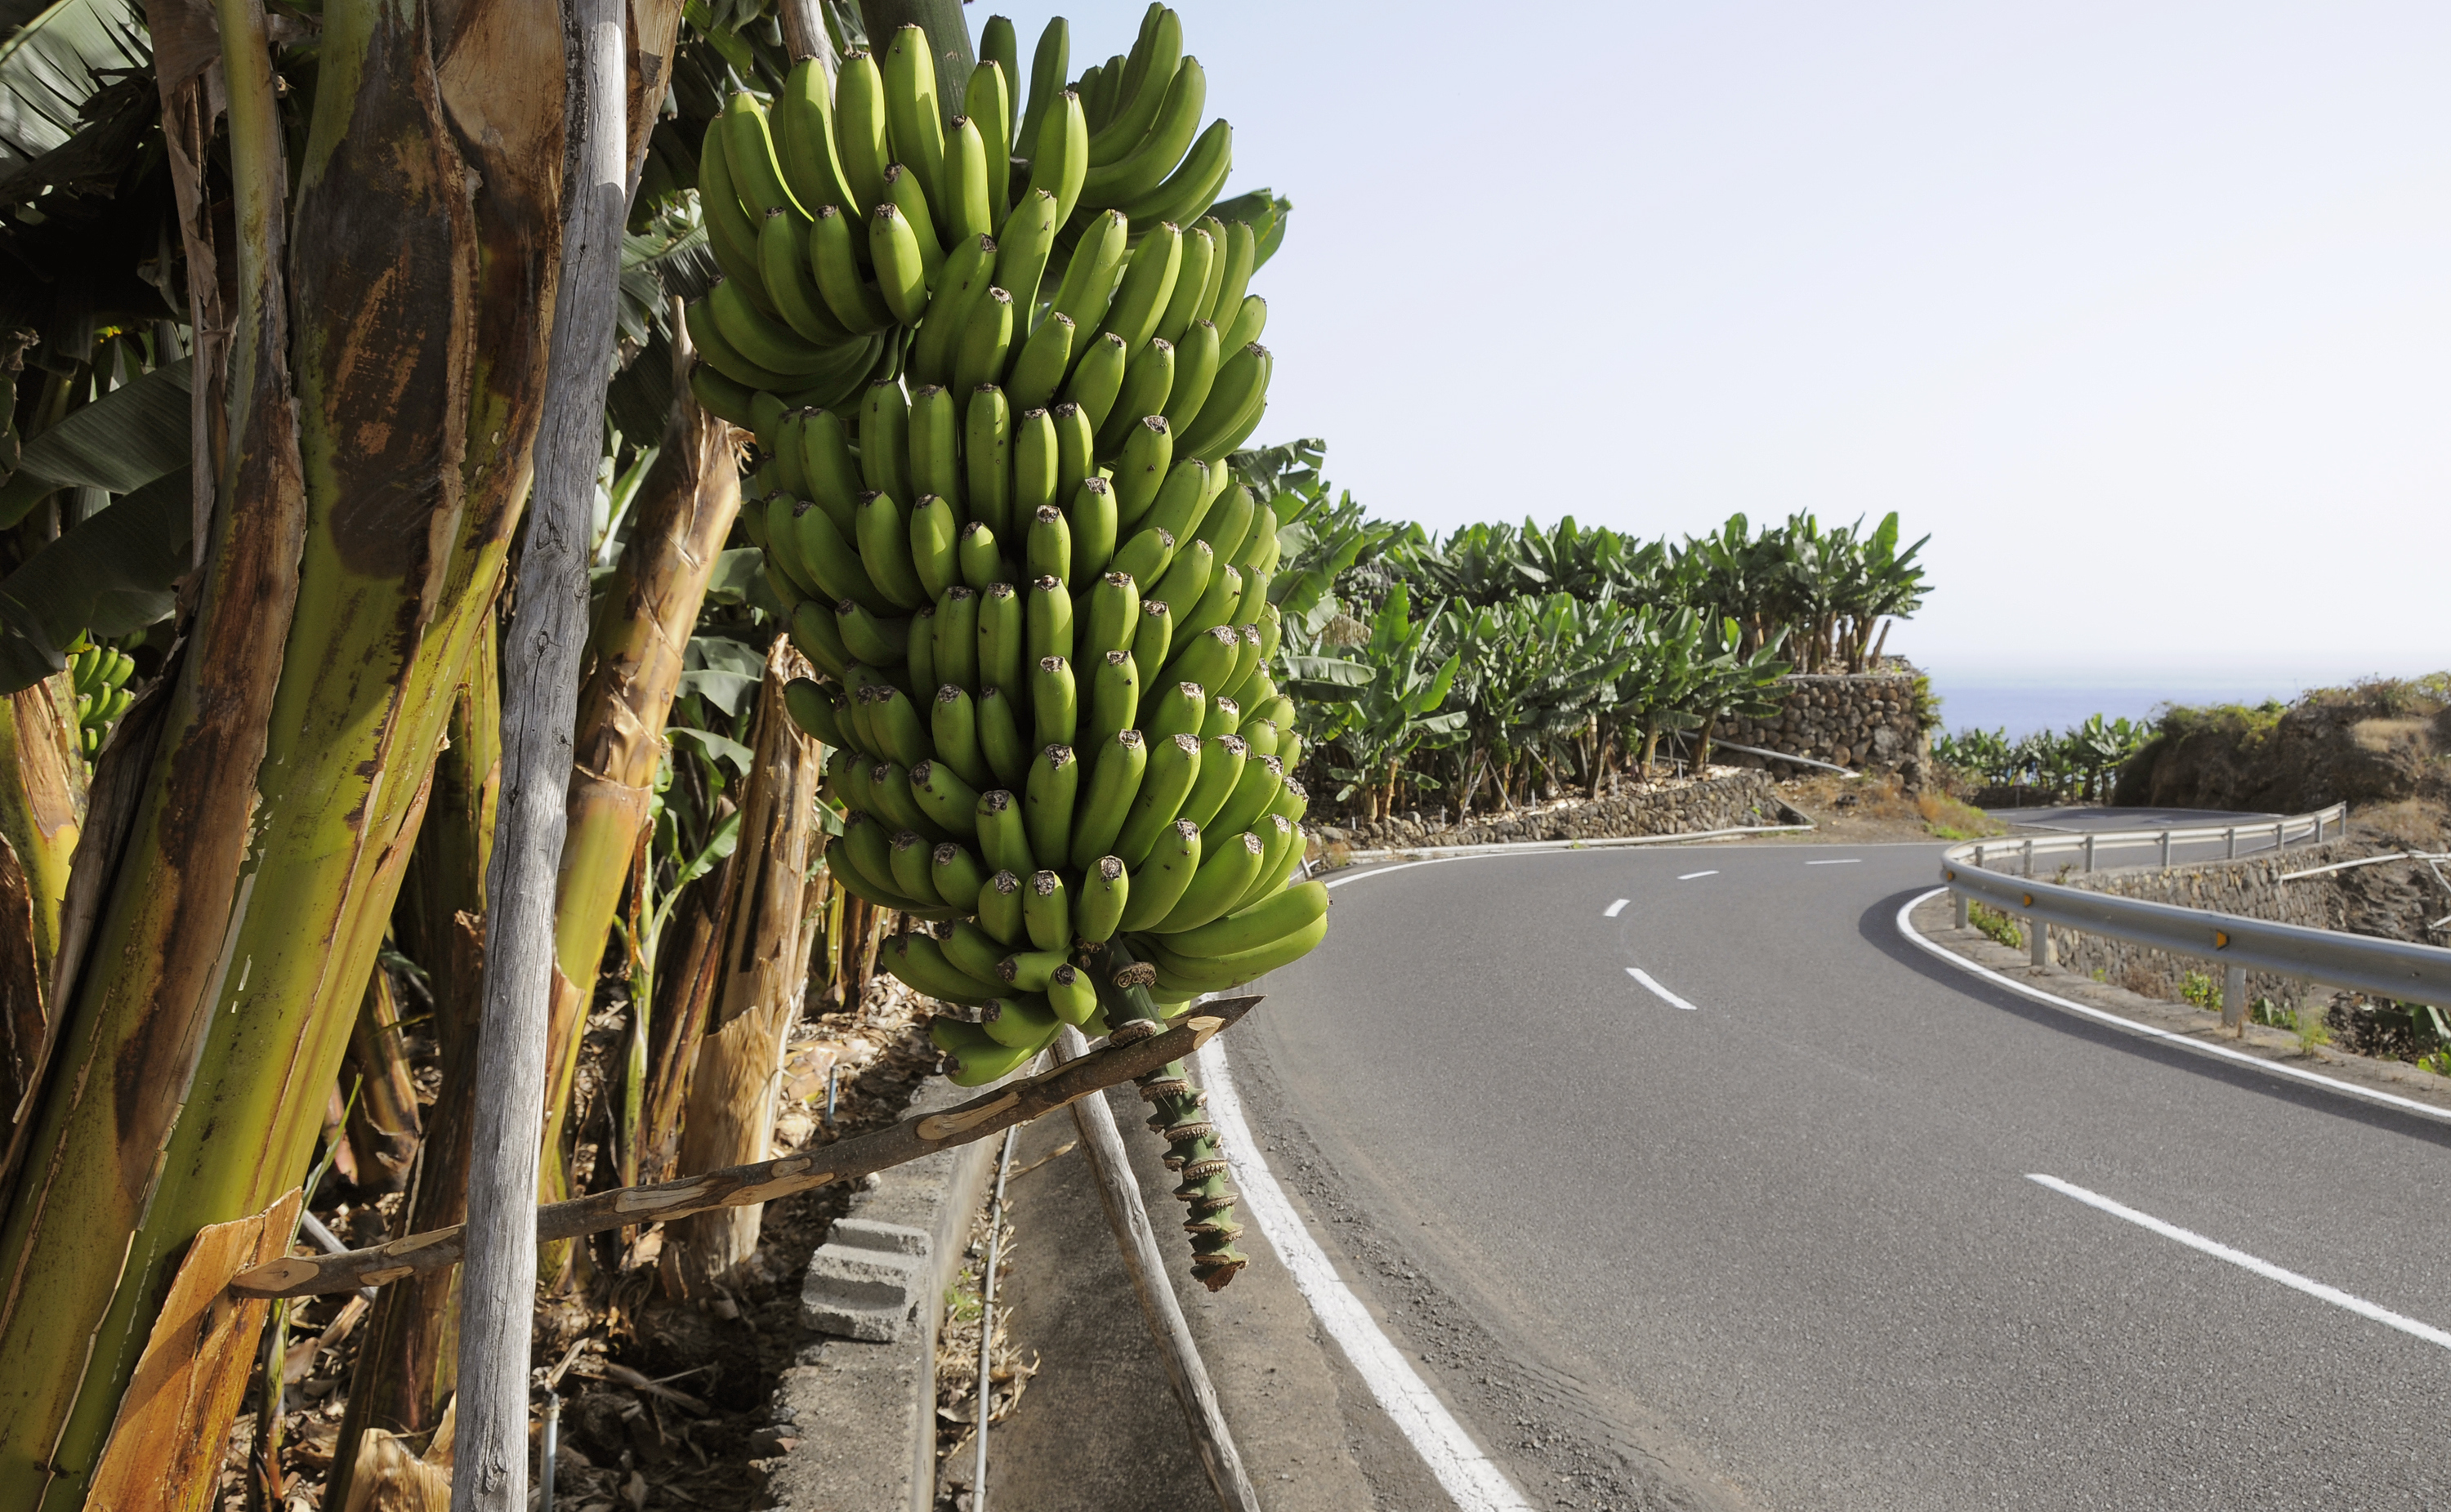 La Palma exportiert jedes Jahr die meisten Bananen Spaniens – außerdem Mangos, Avocados und Papayas